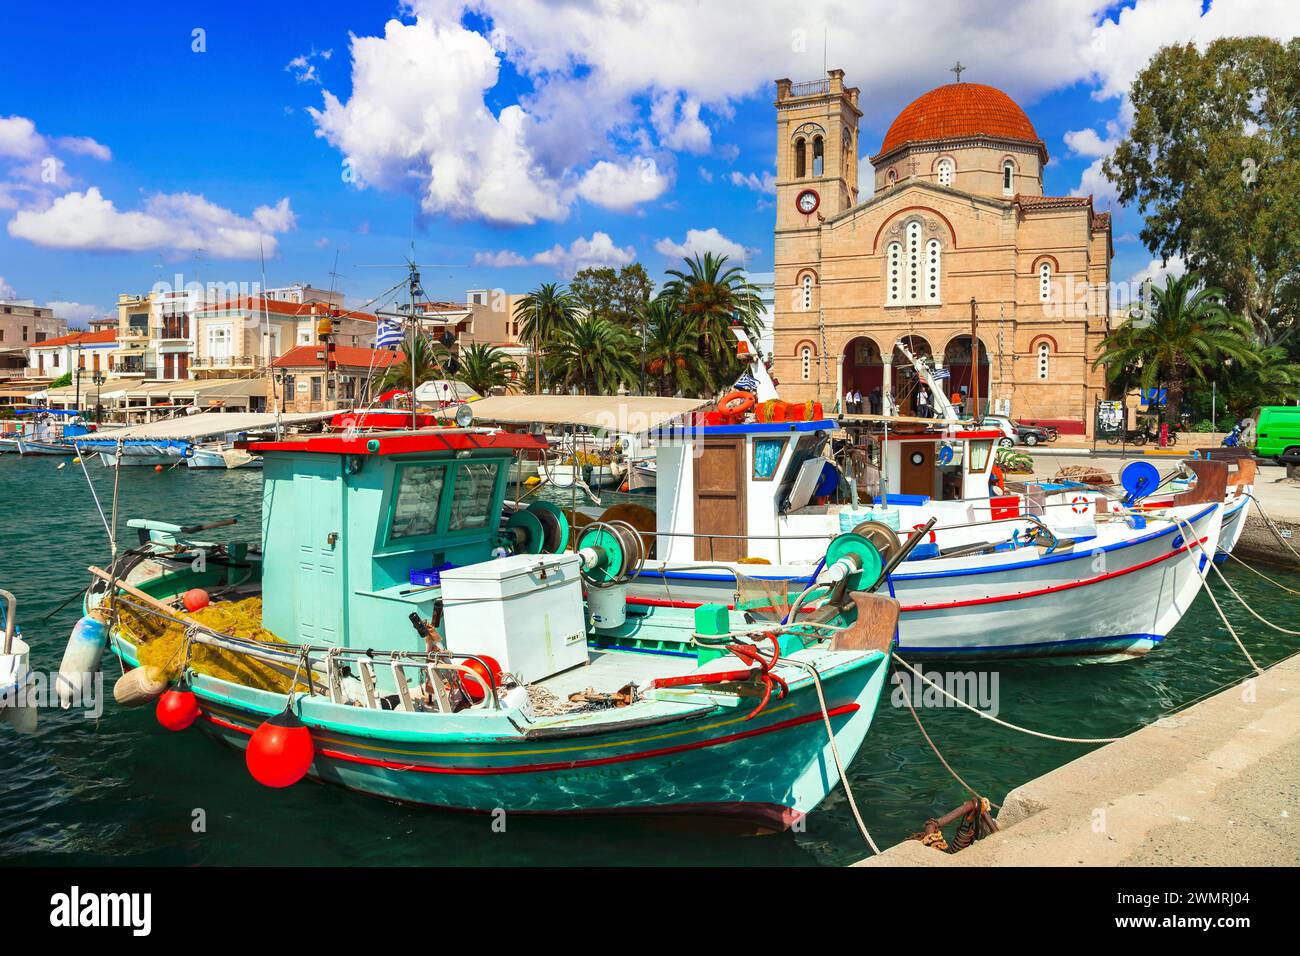 Die Saronischen Inseln in Griechenland. Bezaubernde, wunderschöne griechische Insel - Ägina mit traditionellen Fischerbooten und St. Nikolaikirche Stockfoto